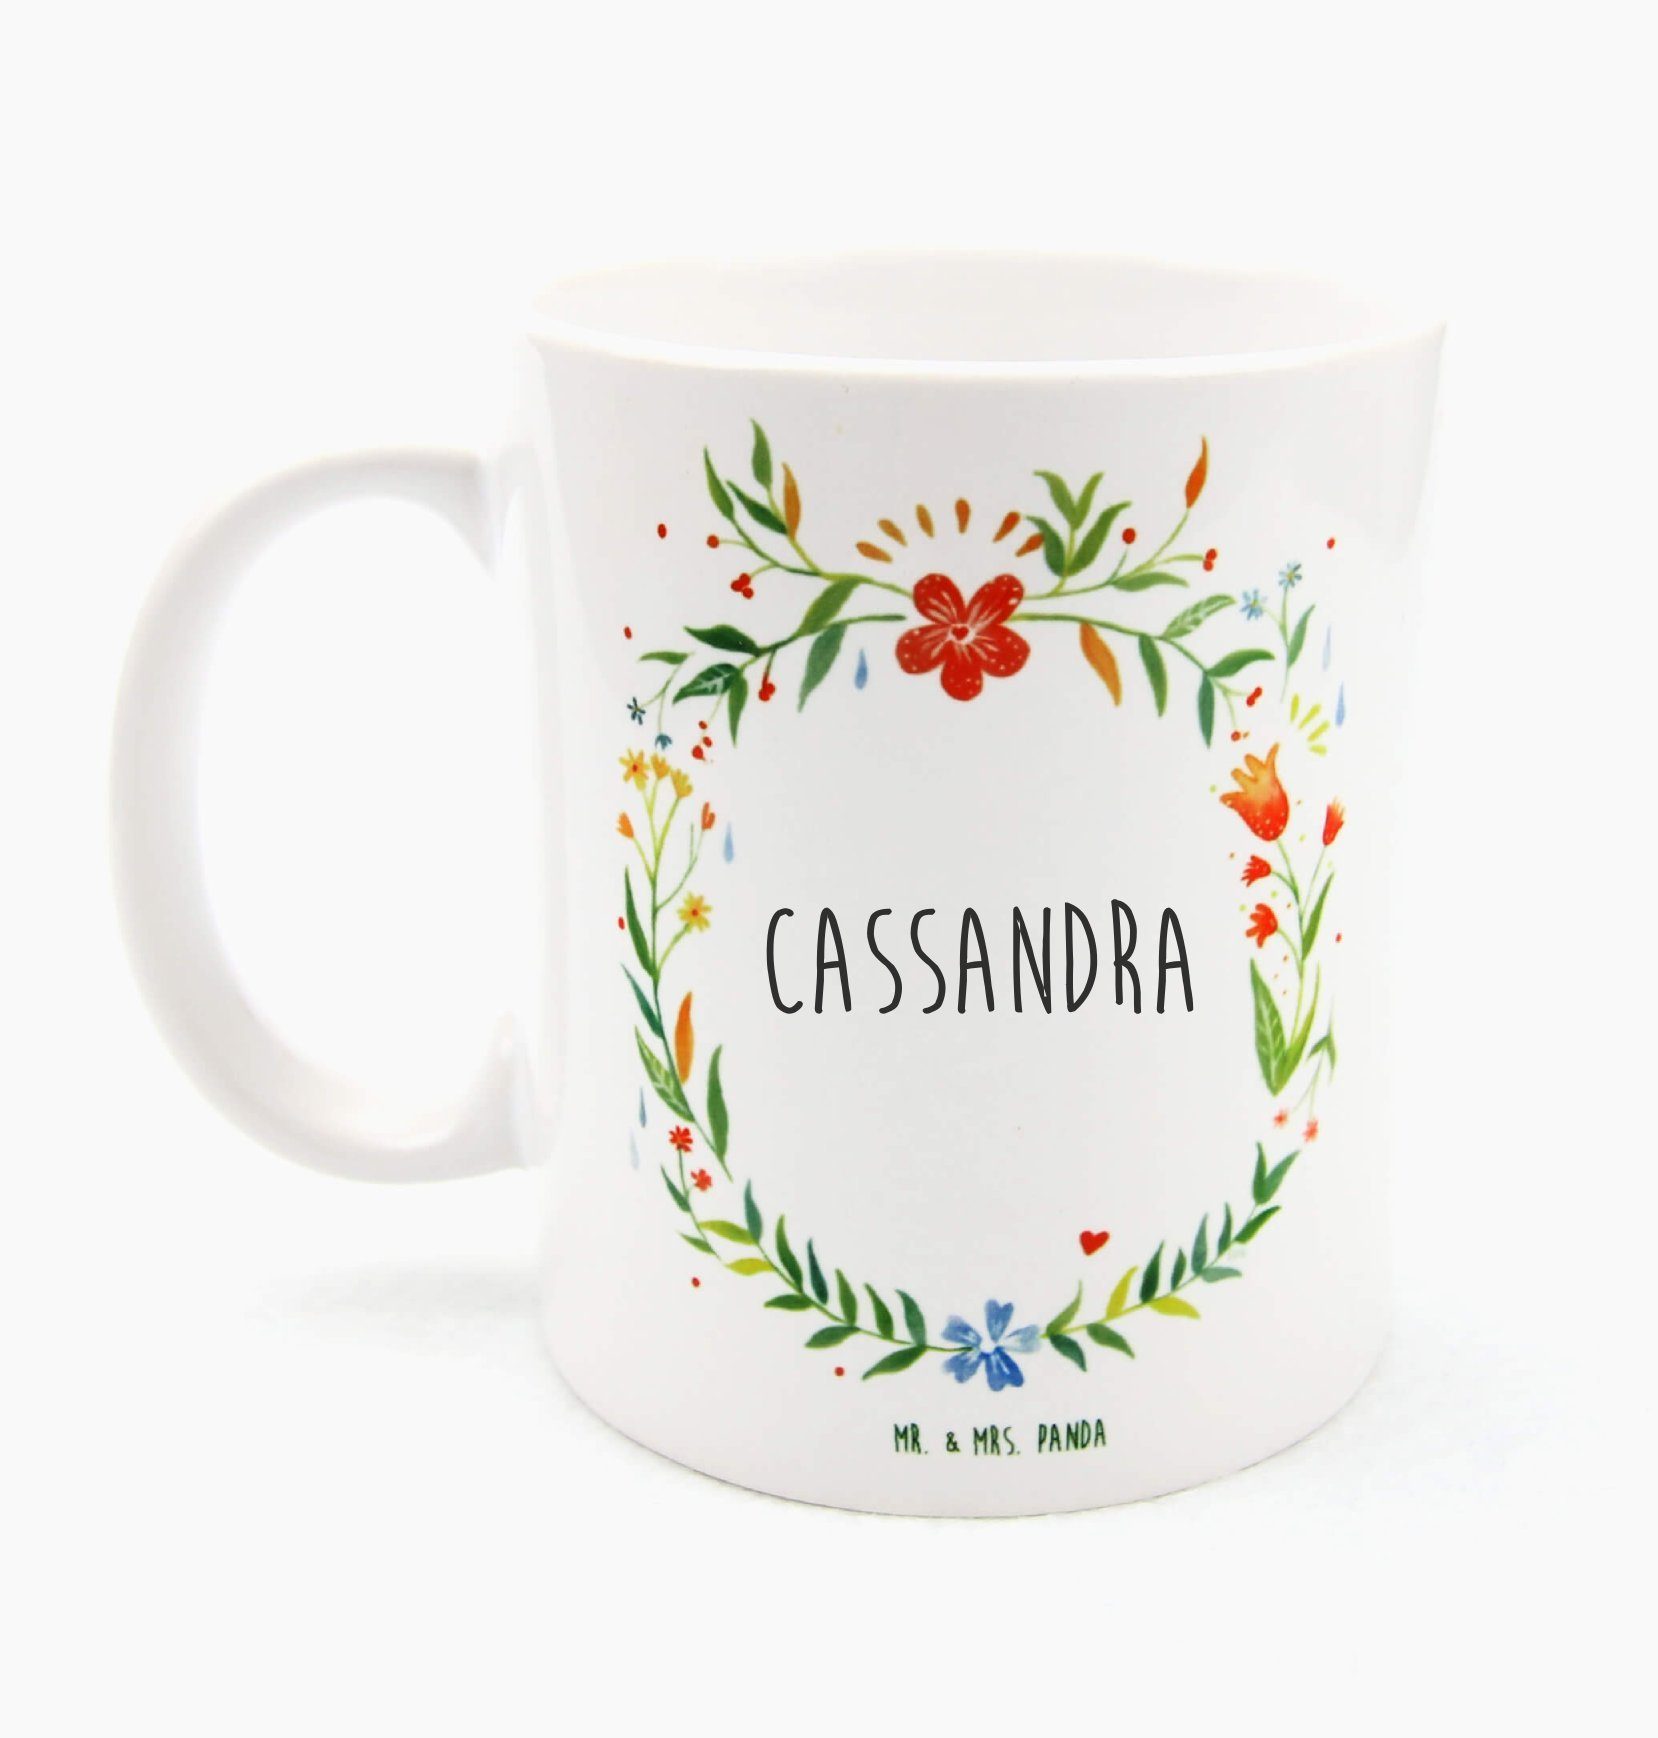 Mr. & Mrs. Panda Tasse Kaffeetasse, Tasse, Keramik Geschenk Tass, Tasse Geschenk, Cassandra Motive, 